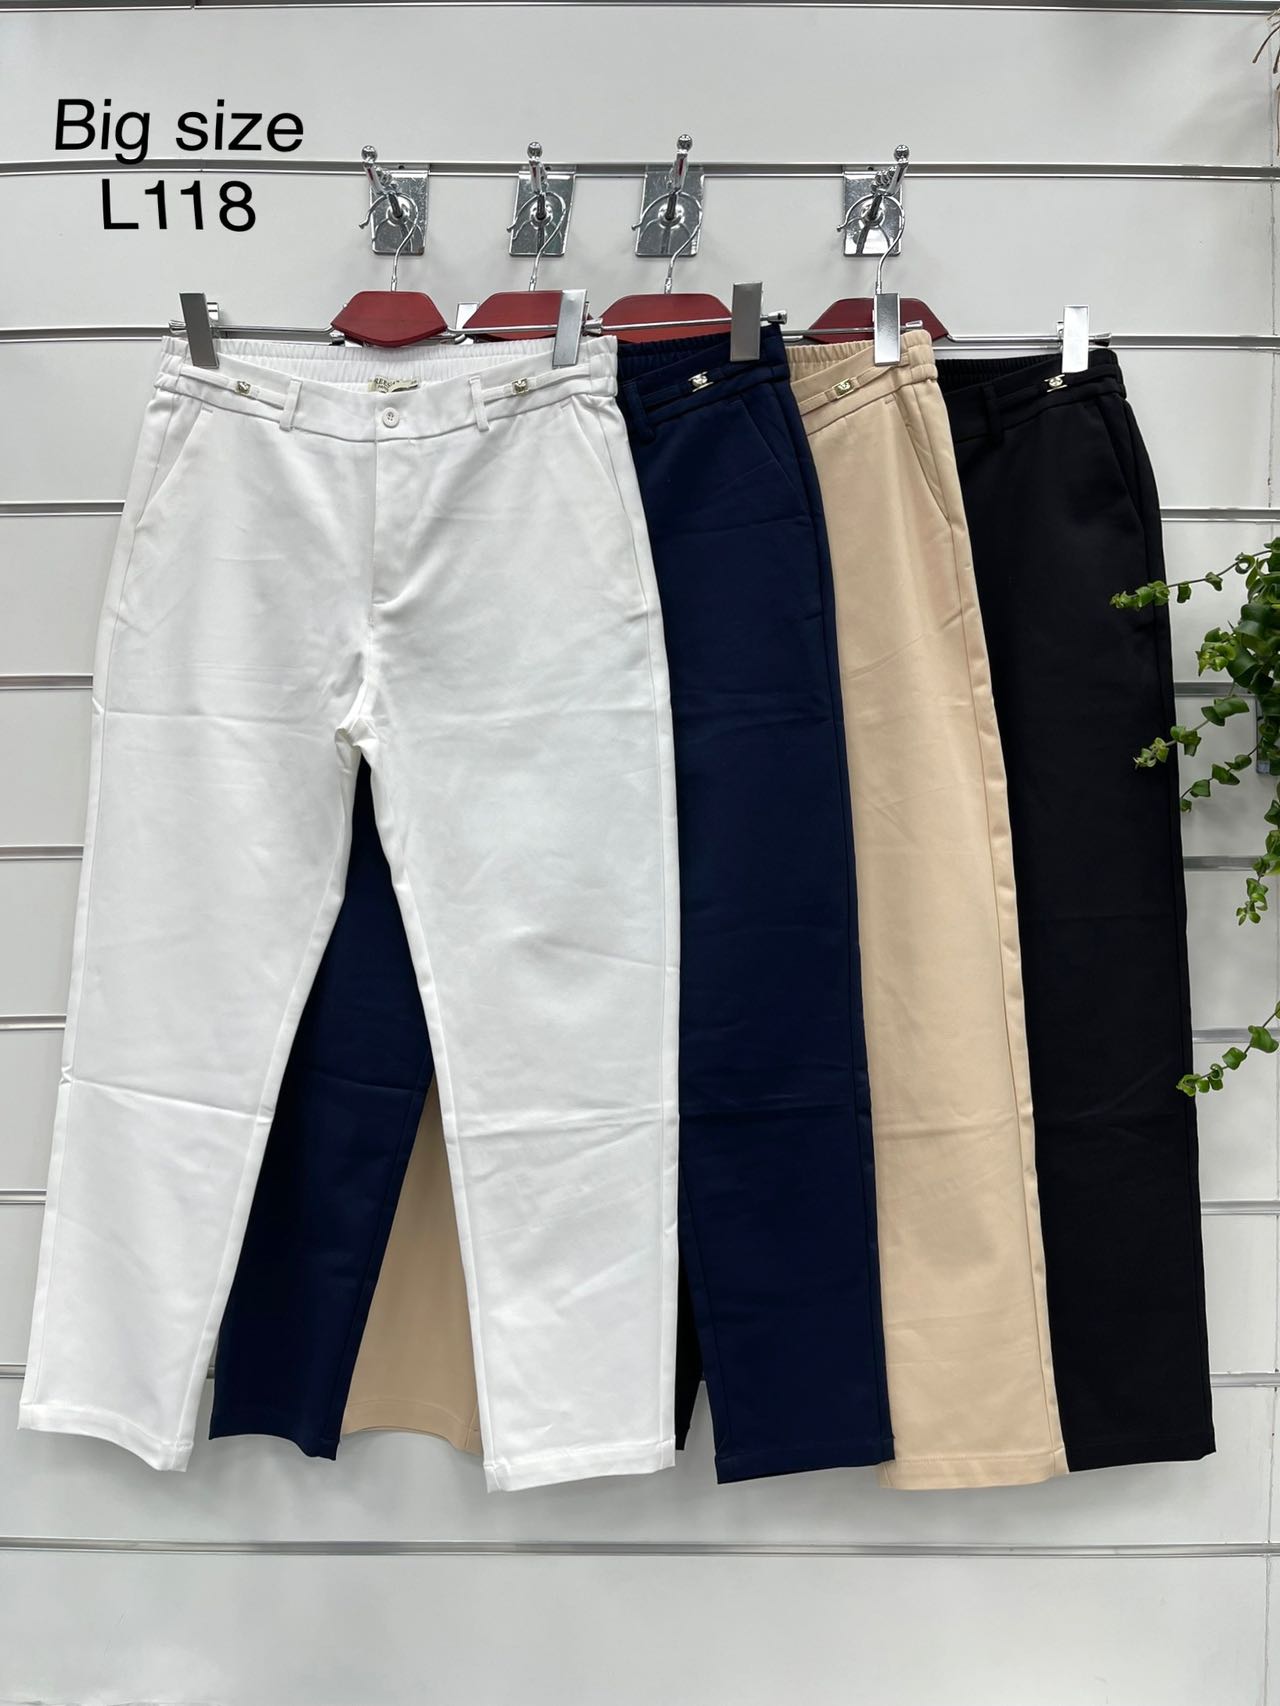 Spodnie  damskie materiałowe   Roz XL-4XL.  1 kolor . Paczka 8szt